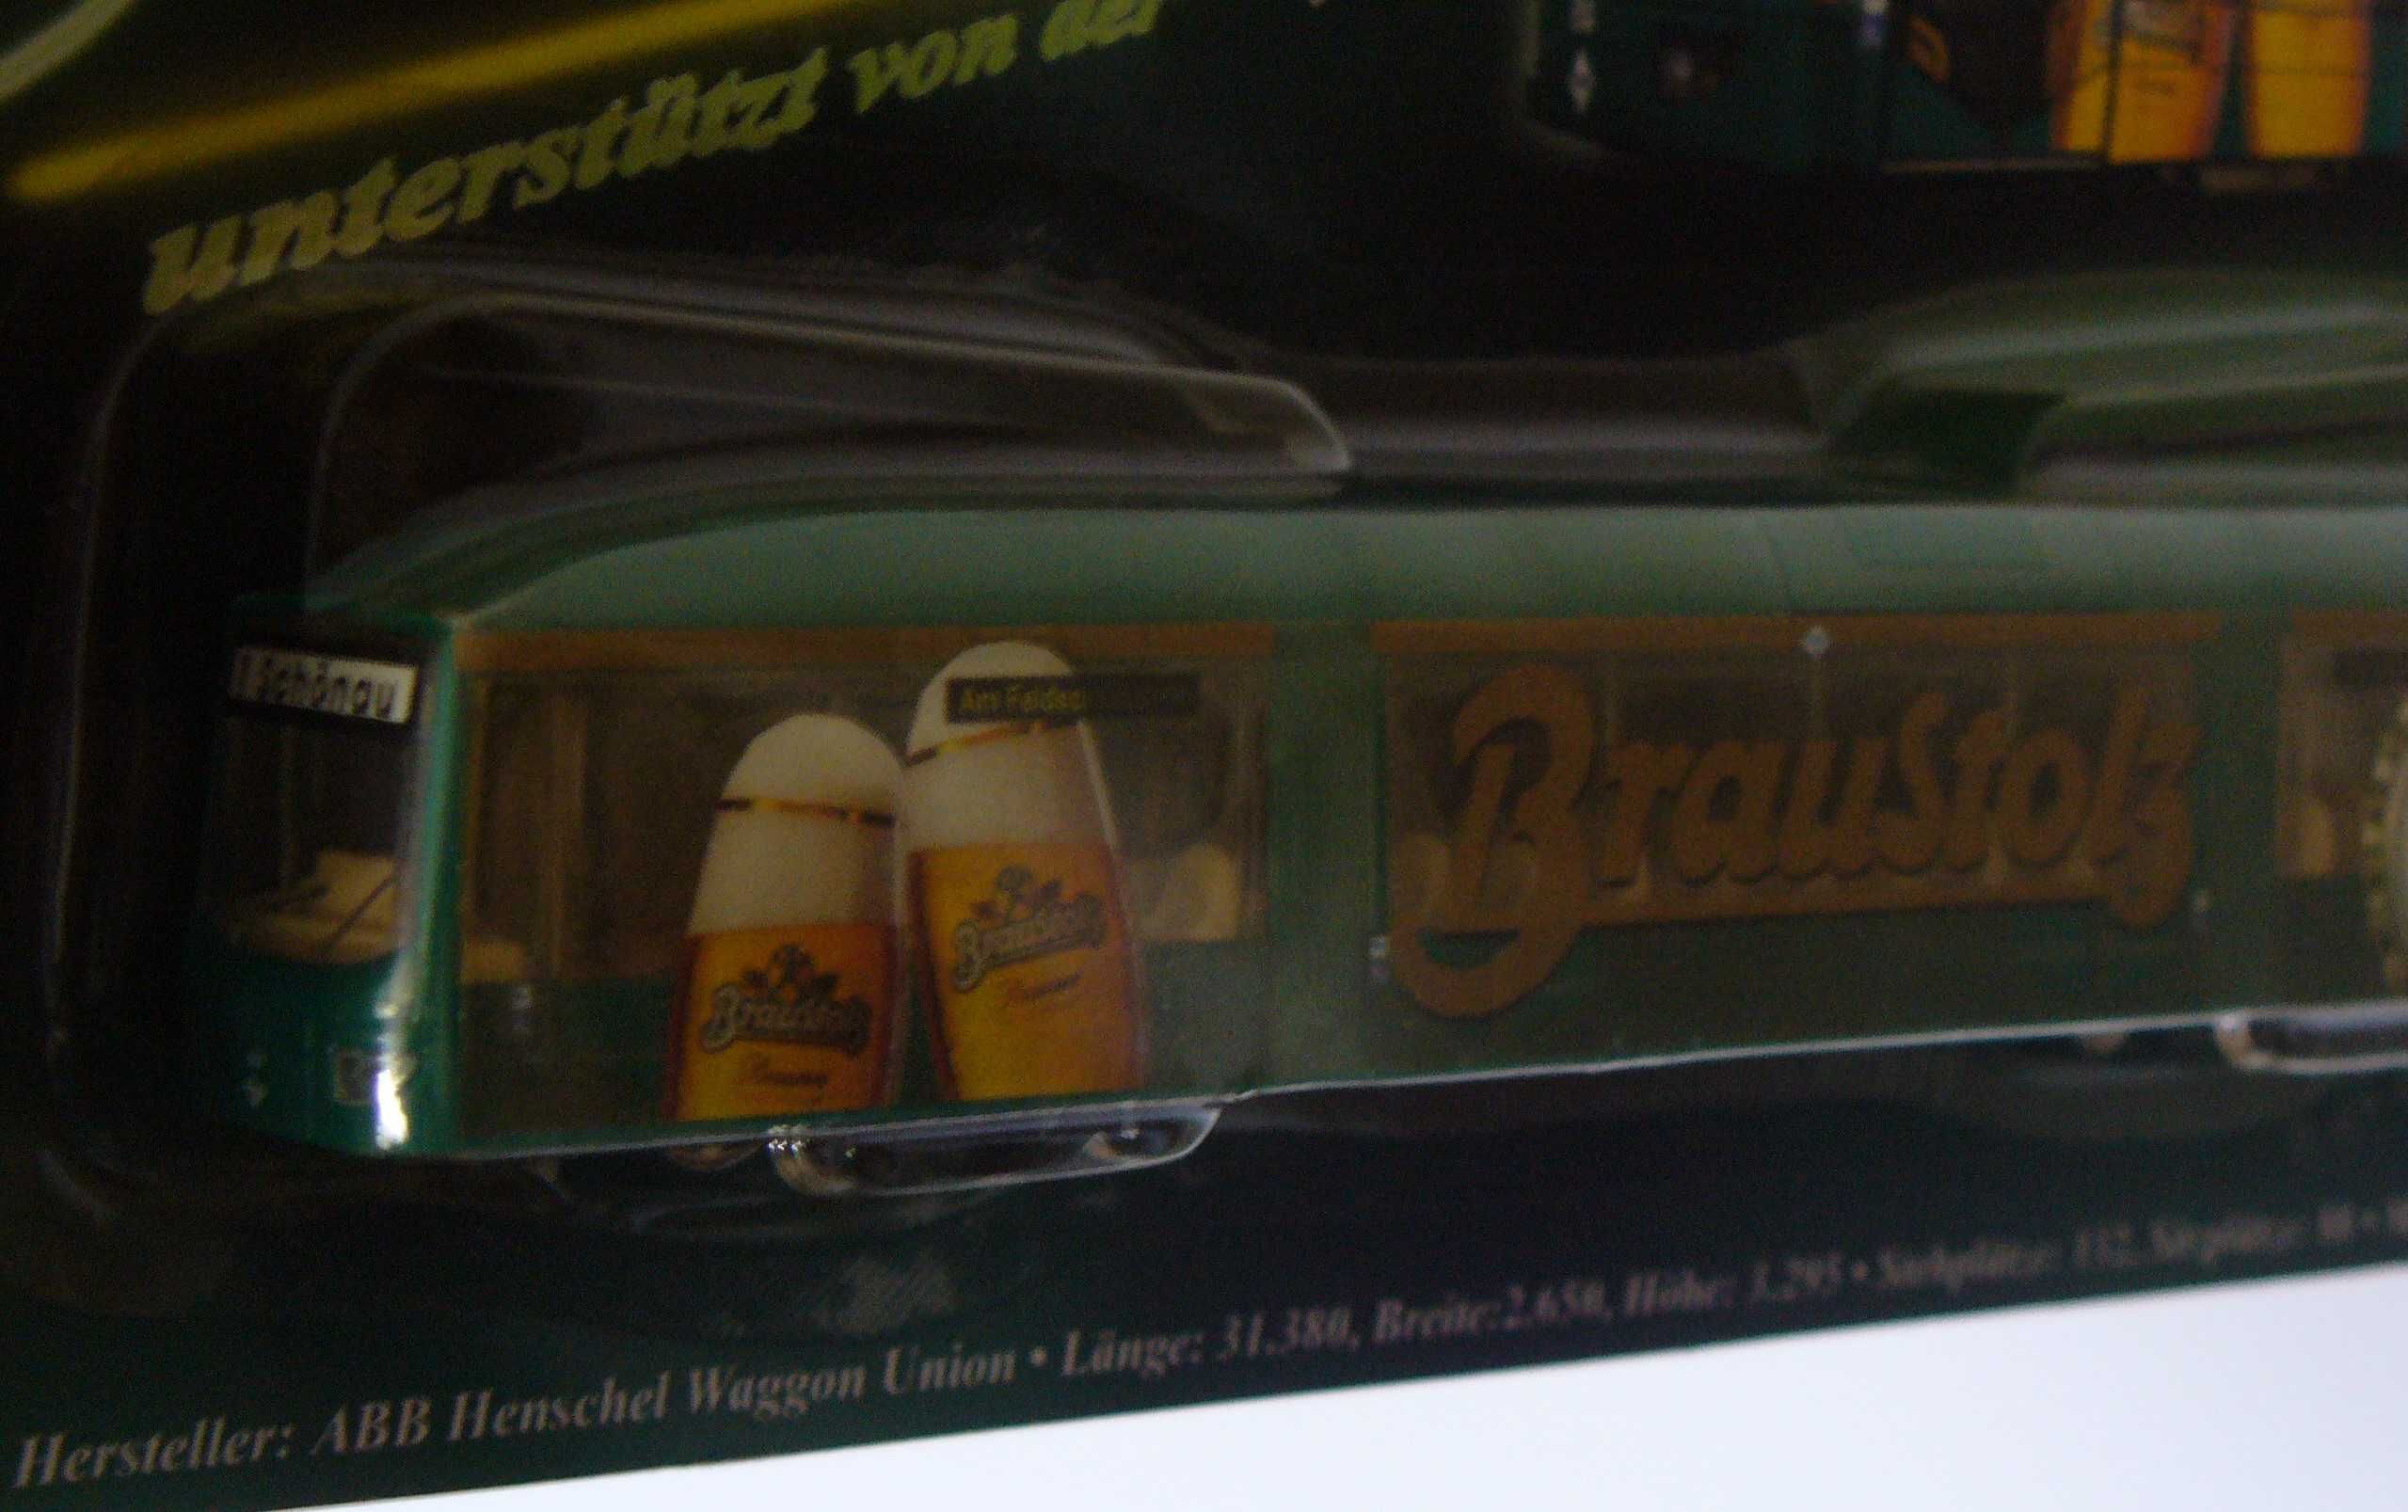 Elétrico - miniatura com publicidade a cerveja